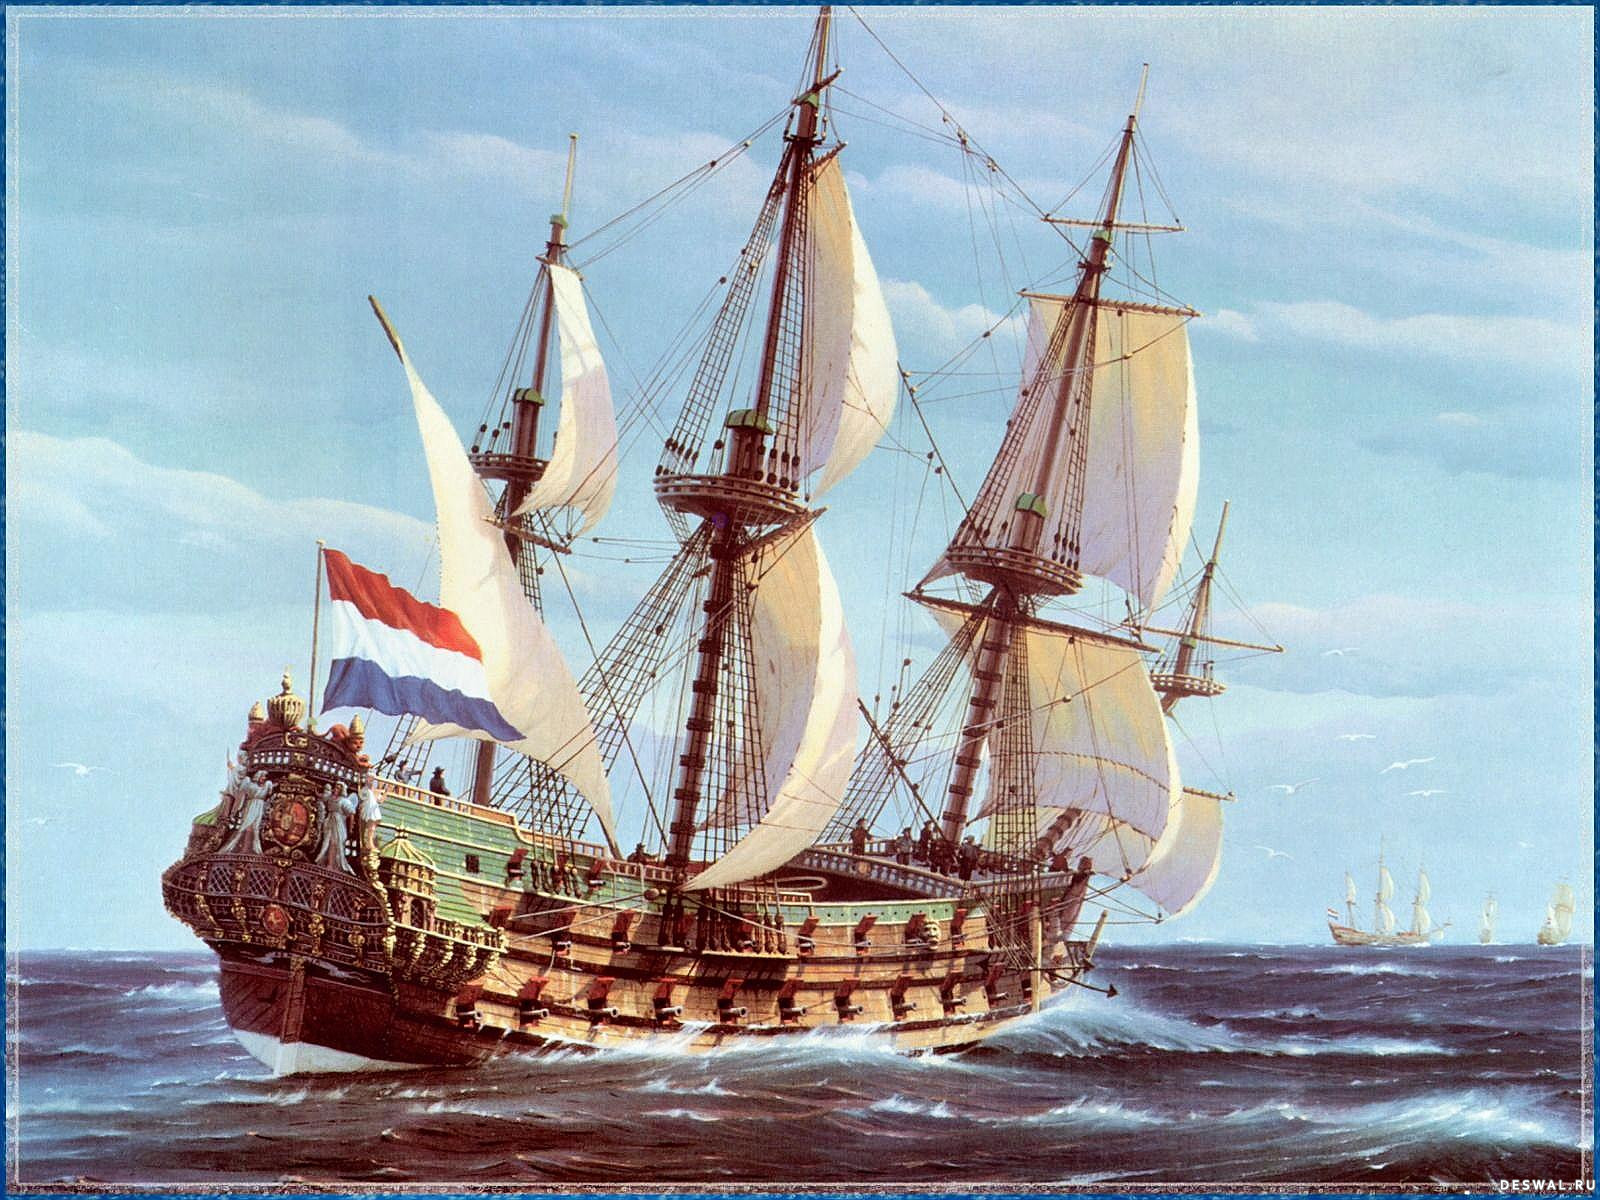 Торговый фрегат. Де Зевен Провинсиен парусный корабль. Фрегат Орел 1668. Галеон корабль 17 века. Галеон 18 века.